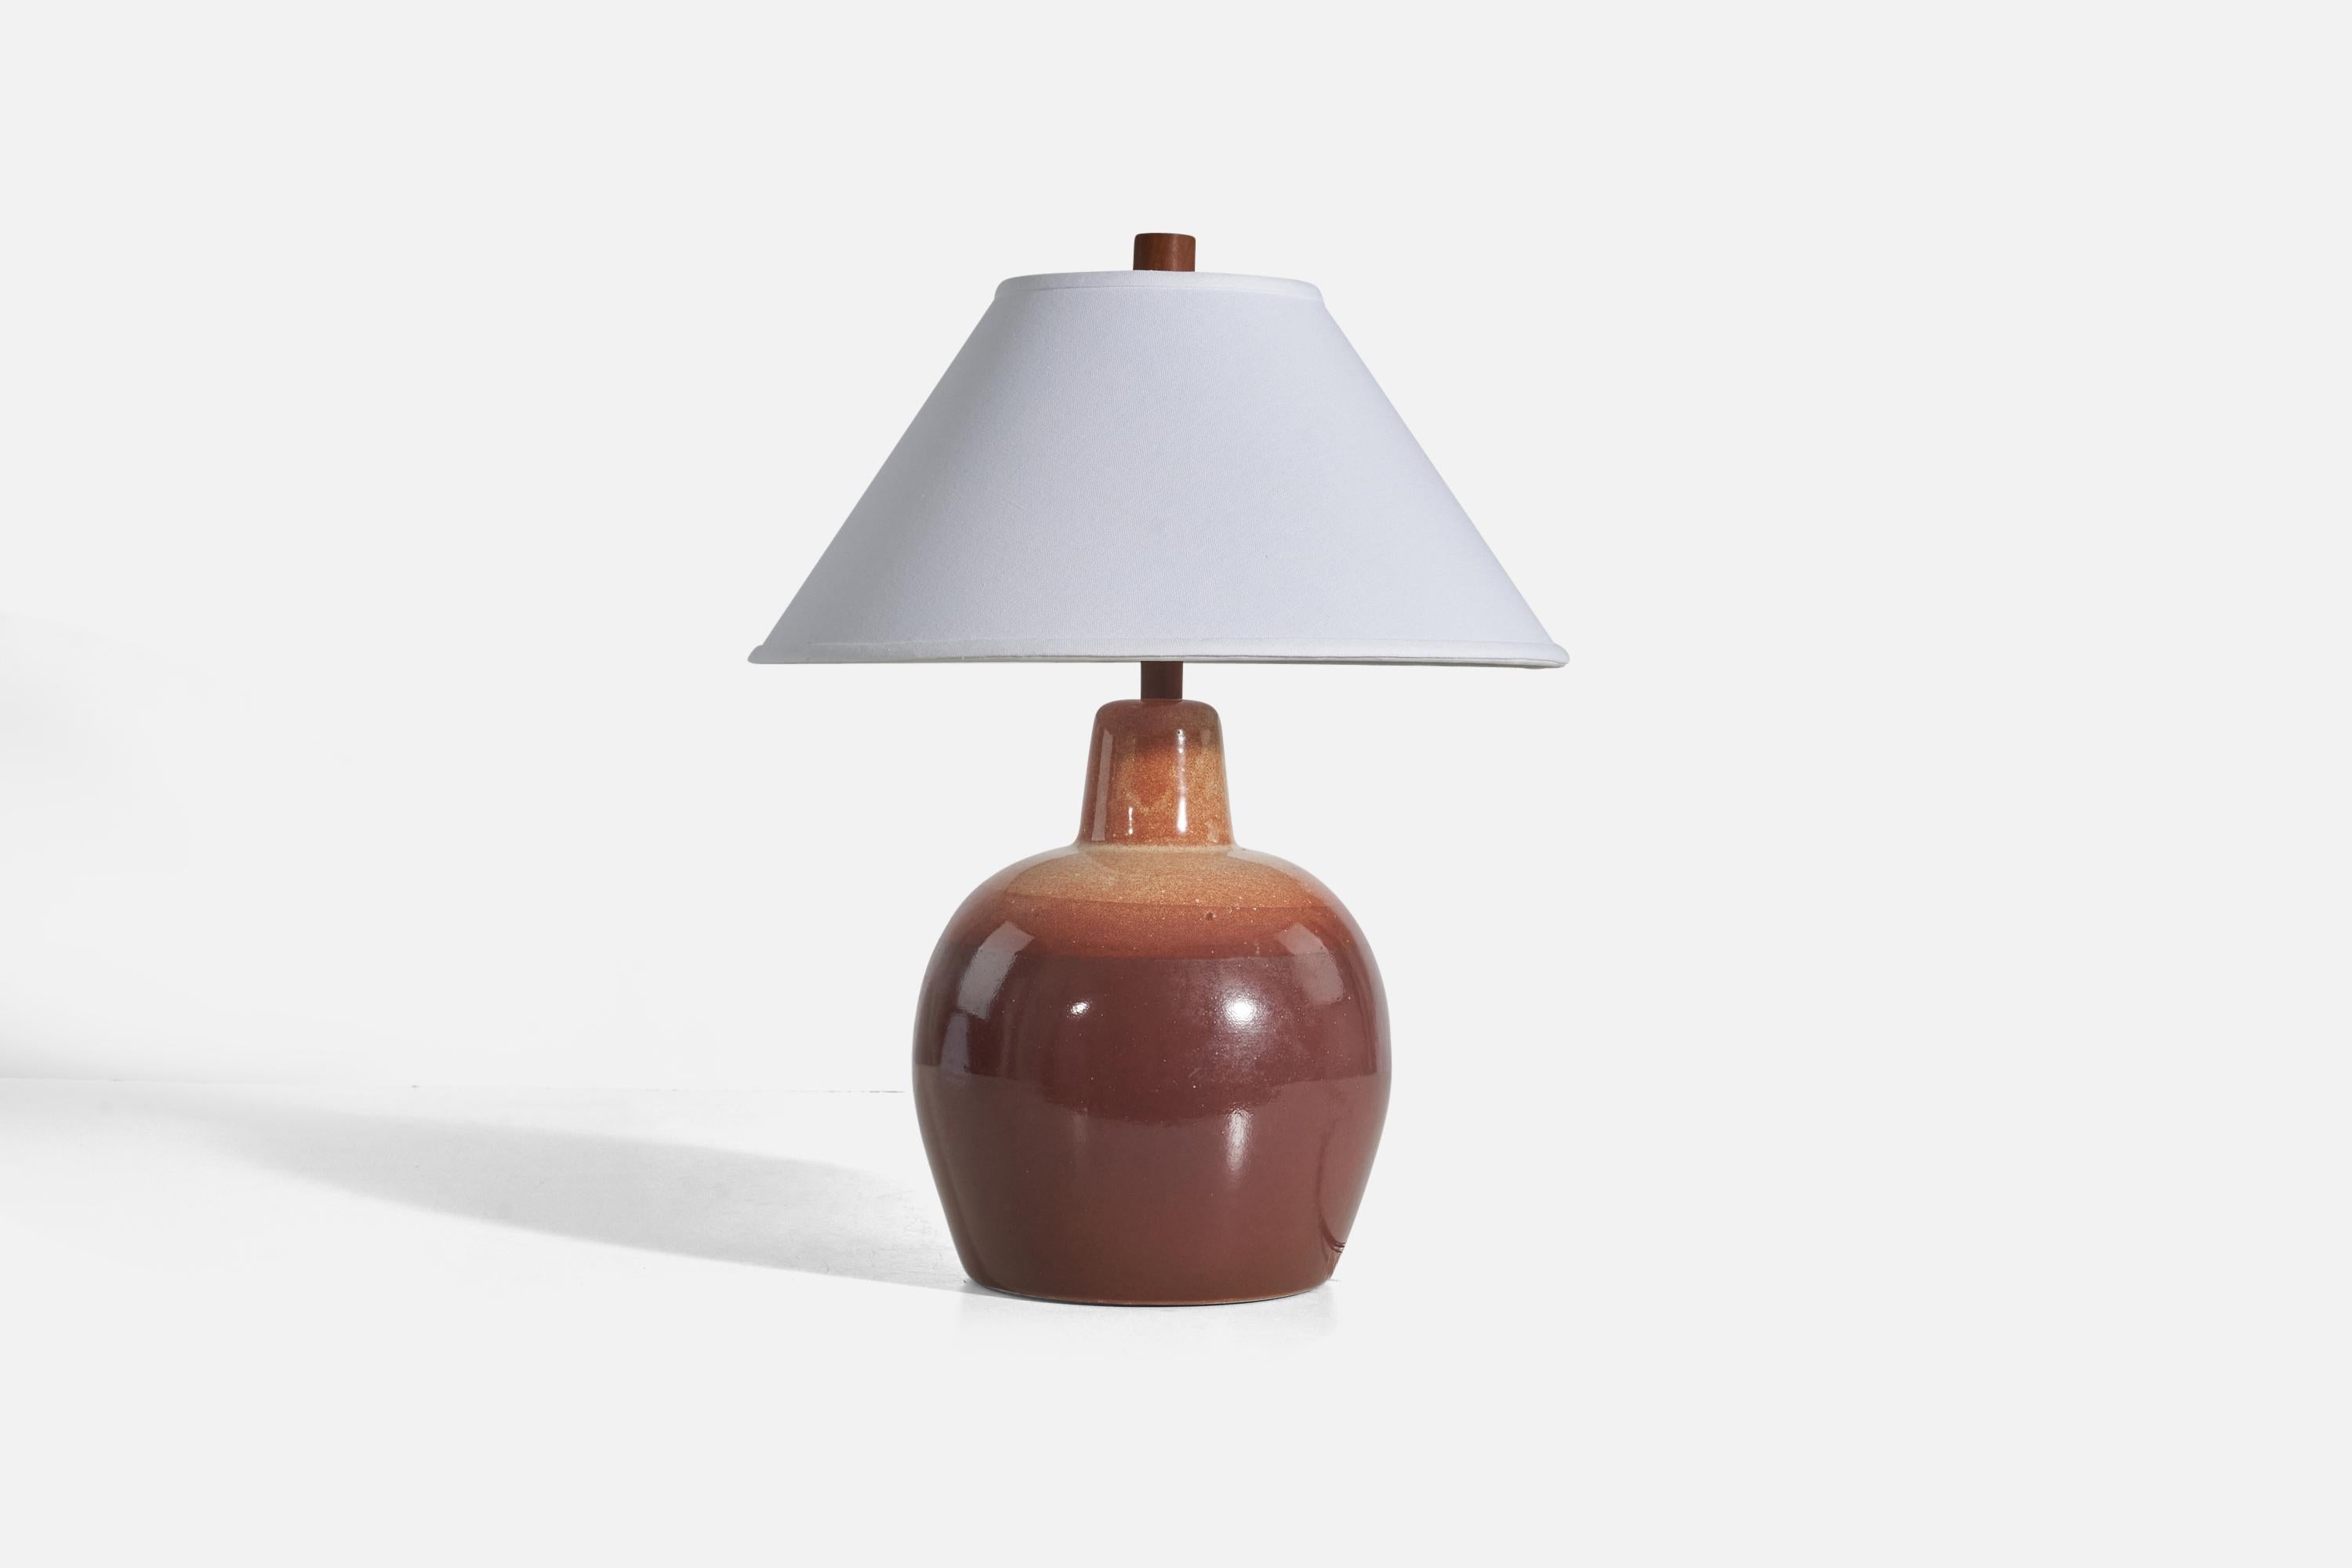 Lampe de table en céramique brune et noyer conçue par Jane & Gordon Martz et produite par Marshall Studios, Indianapolis, années 1950.

Vendu sans abat-jour
Dimensions de la lampe (pouces) : 15.62 x 9.56 x 9.56 (Hauteur x Largeur x